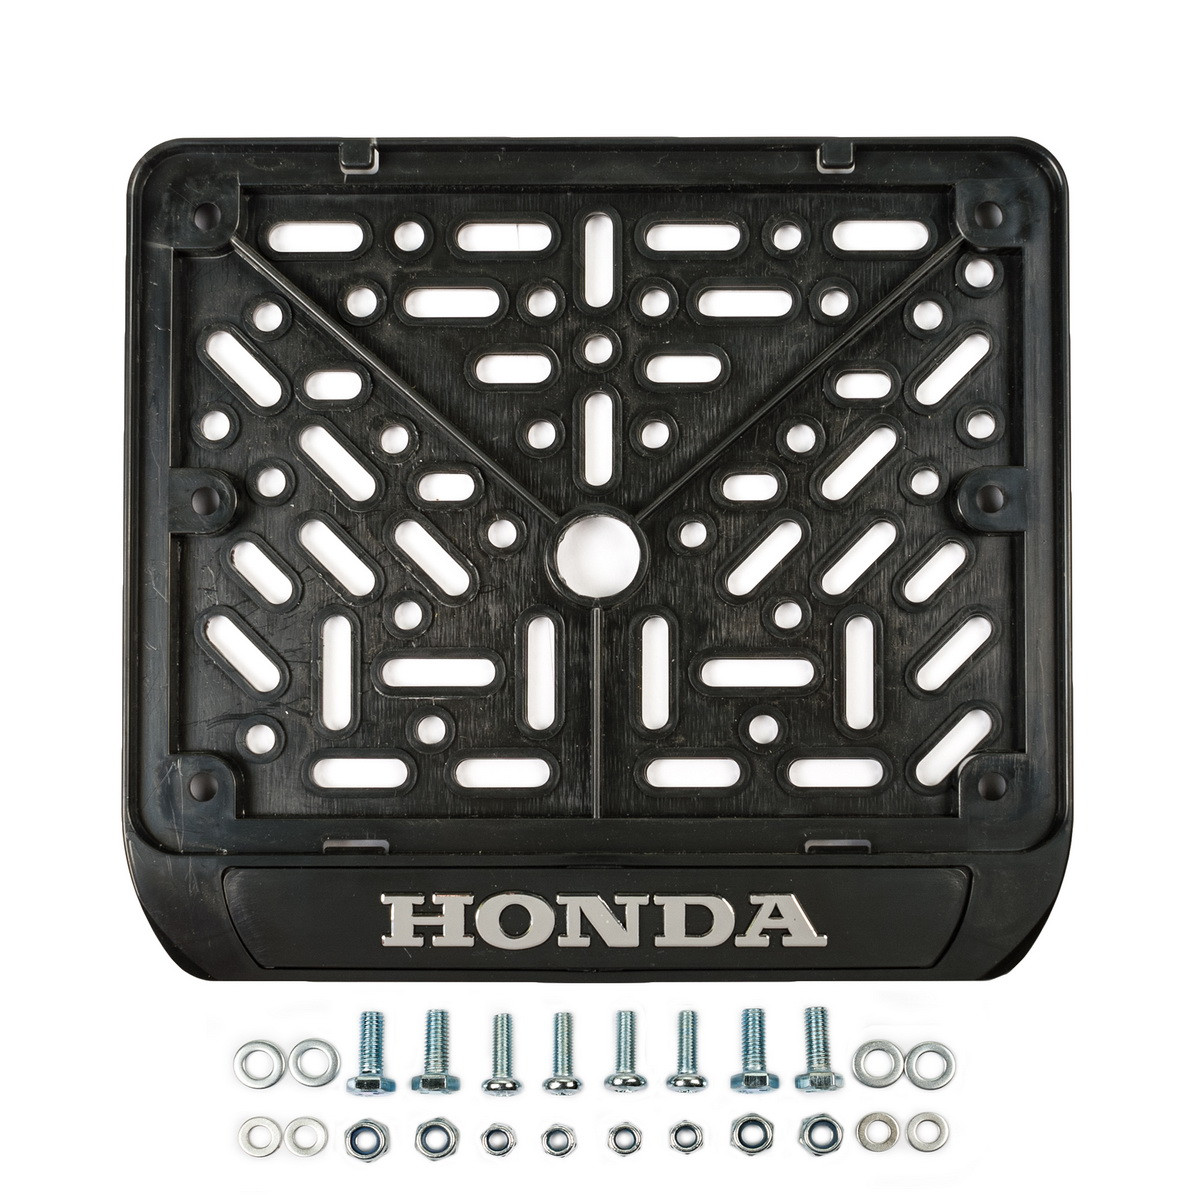 GENERIC HONDA01 рамка для номера мотоцикла нового образца HONDA